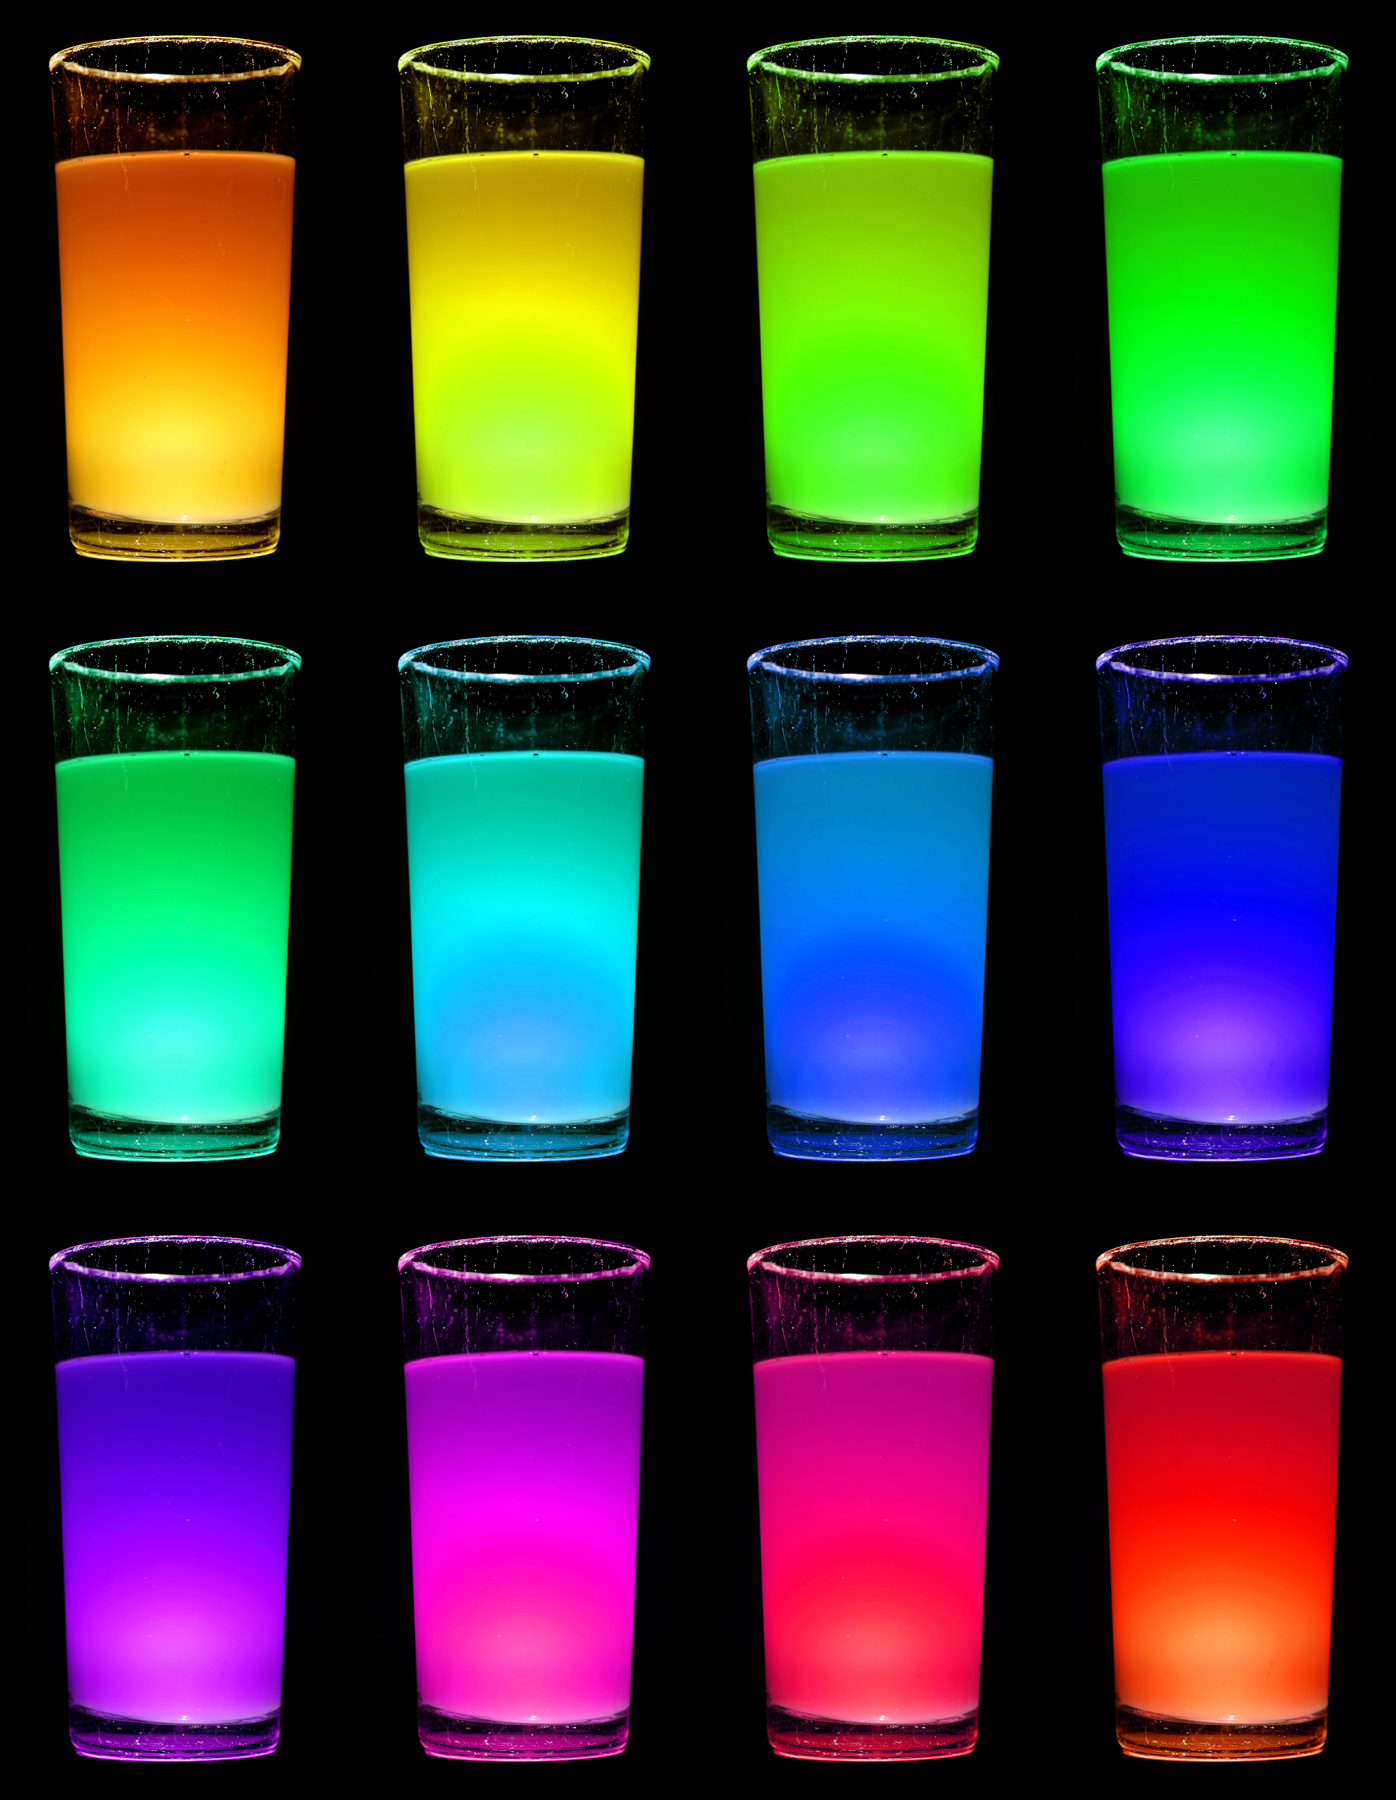 14.-Glowing-glasses.jpg